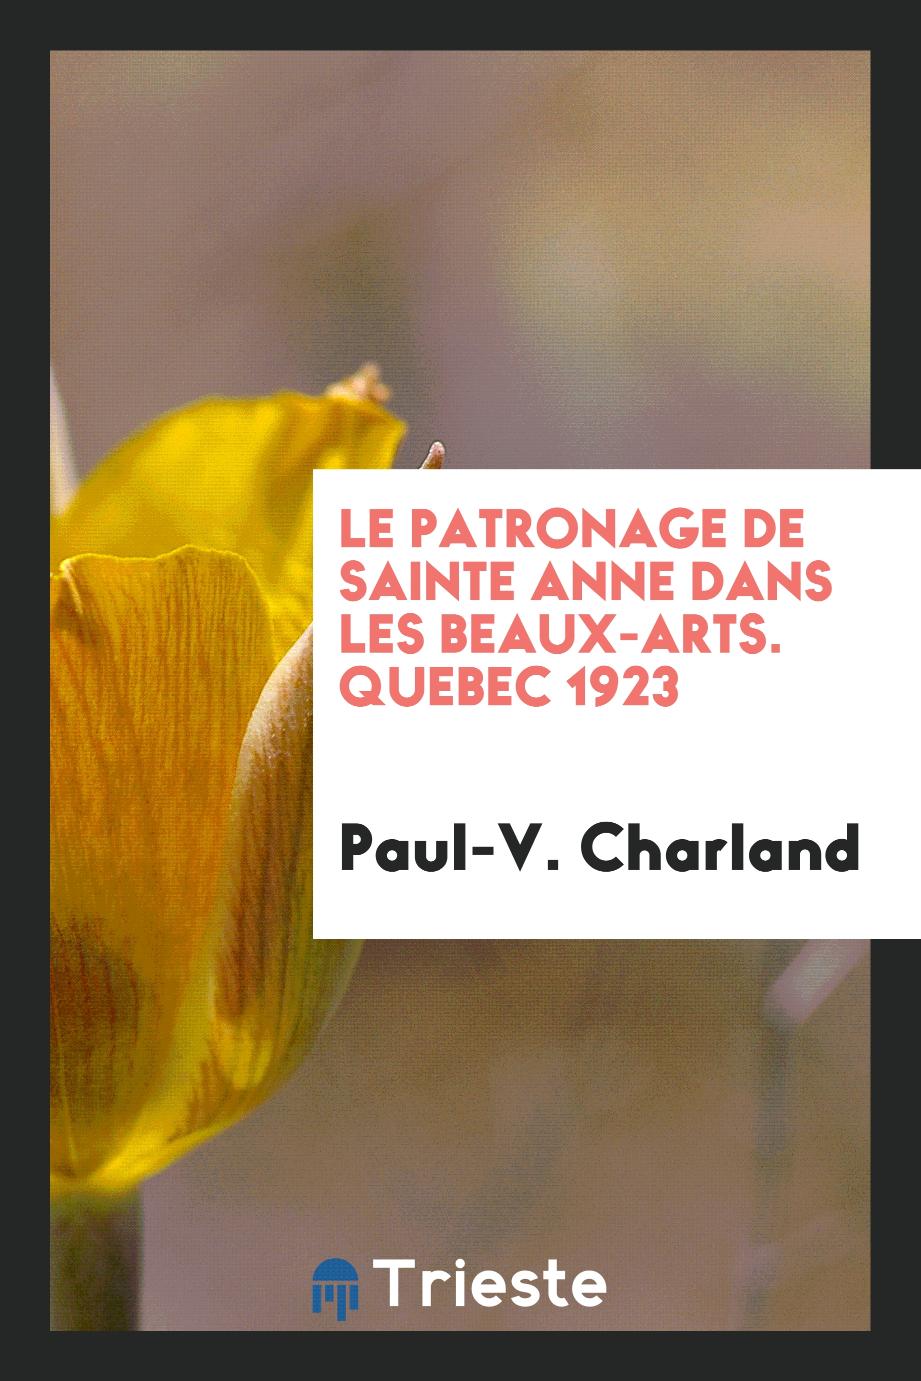 Paul-V. Charland - Le patronage de Sainte Anne dans les beaux-arts. Quebec 1923